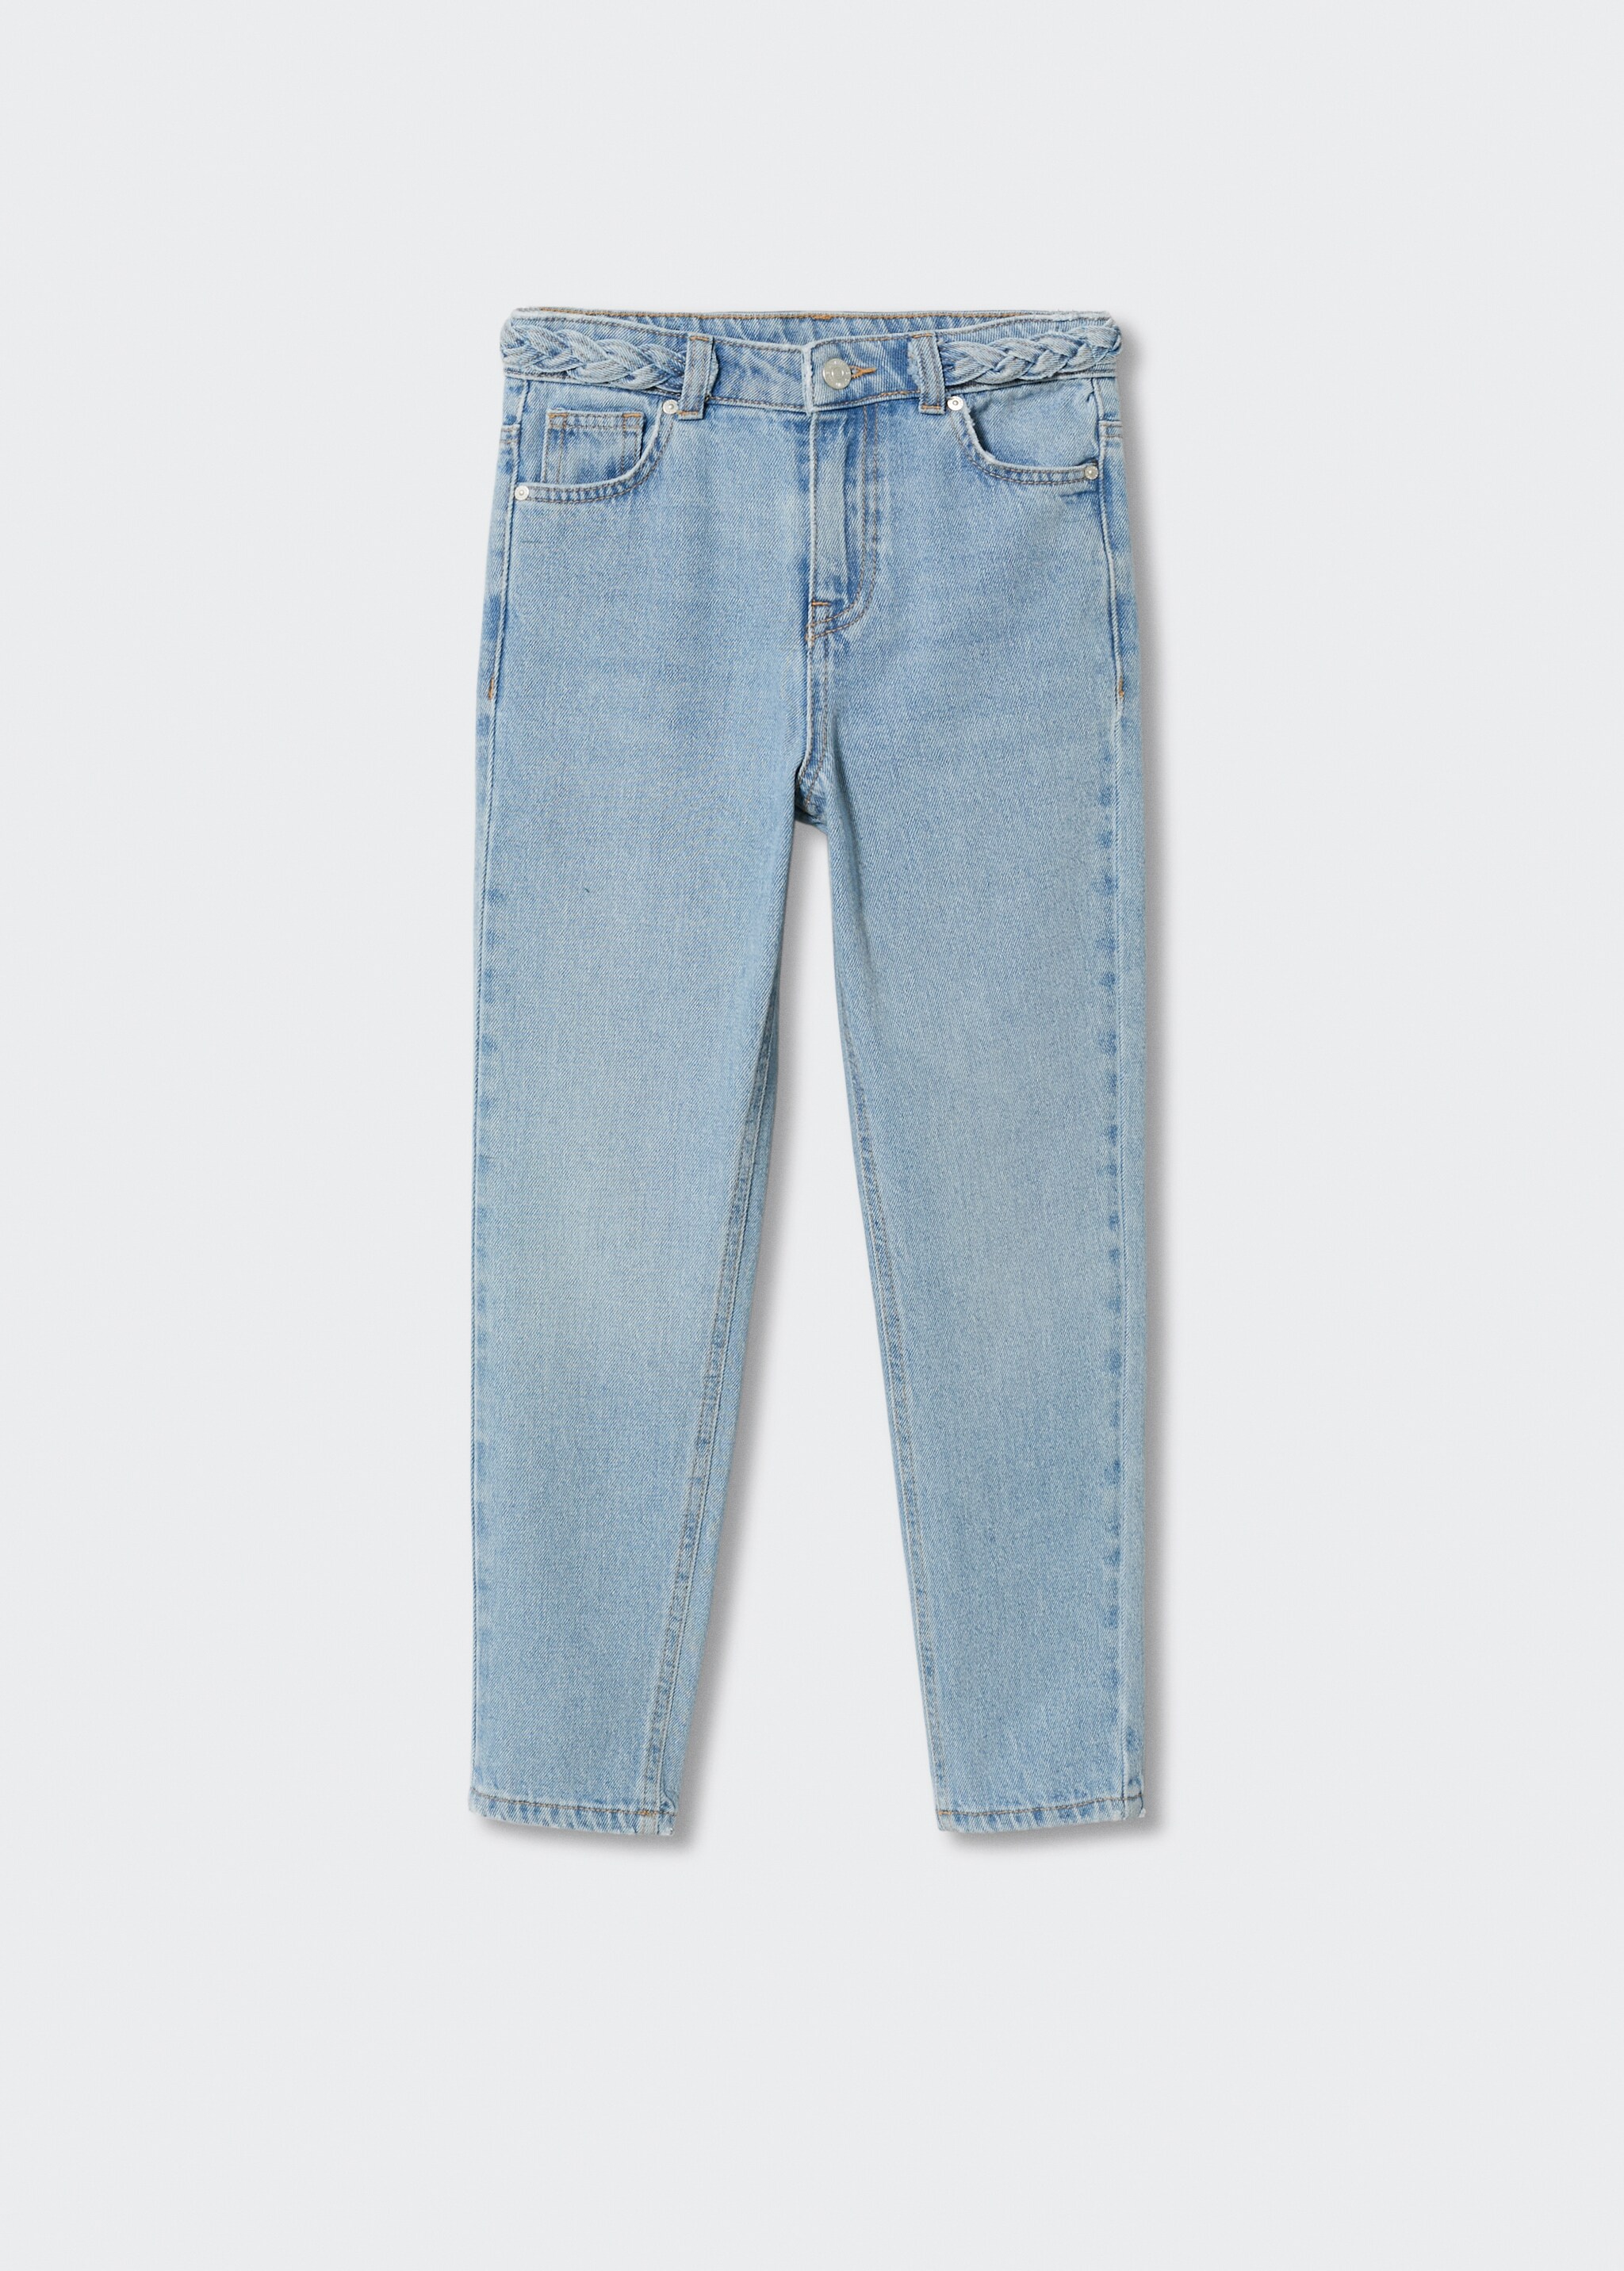 Jeans cinturón trenzado - Artículo sin modelo